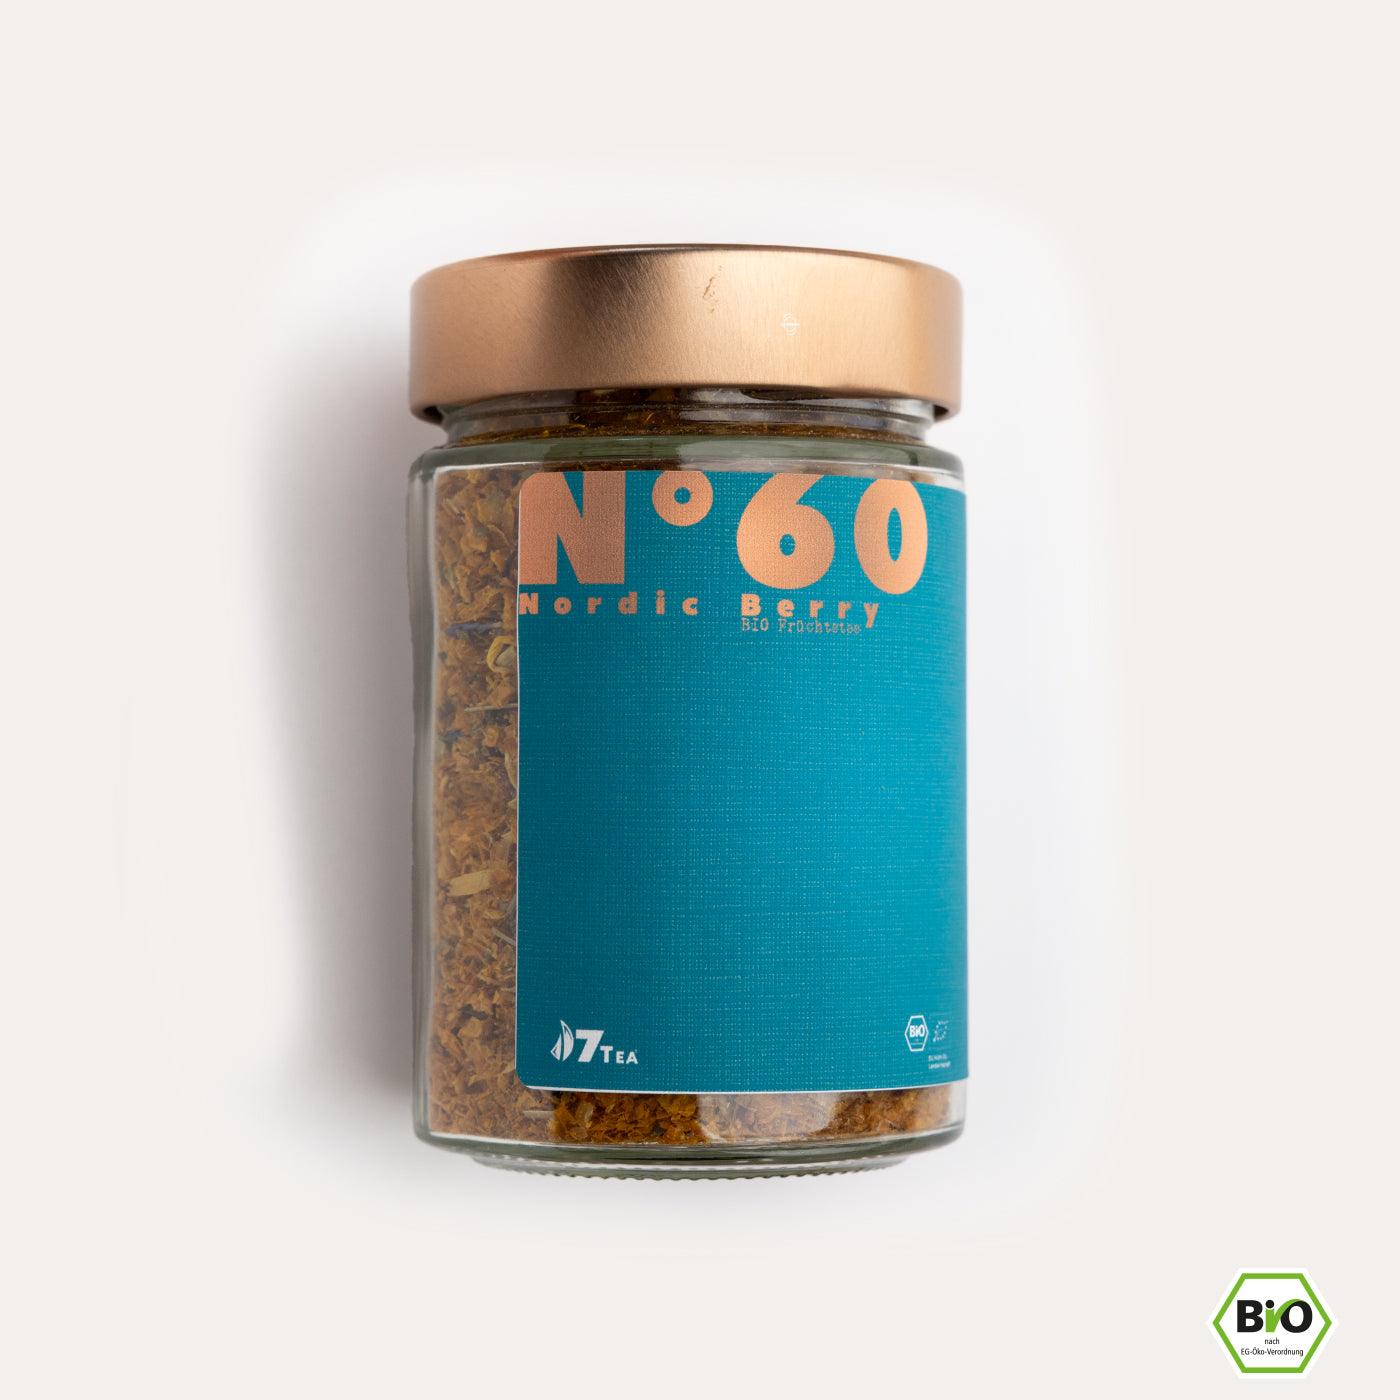 N°60 | Nordic Berry - Sanddorn, Brombeere & Himbeere - 7Tea® Bio-Tee Onlineshop